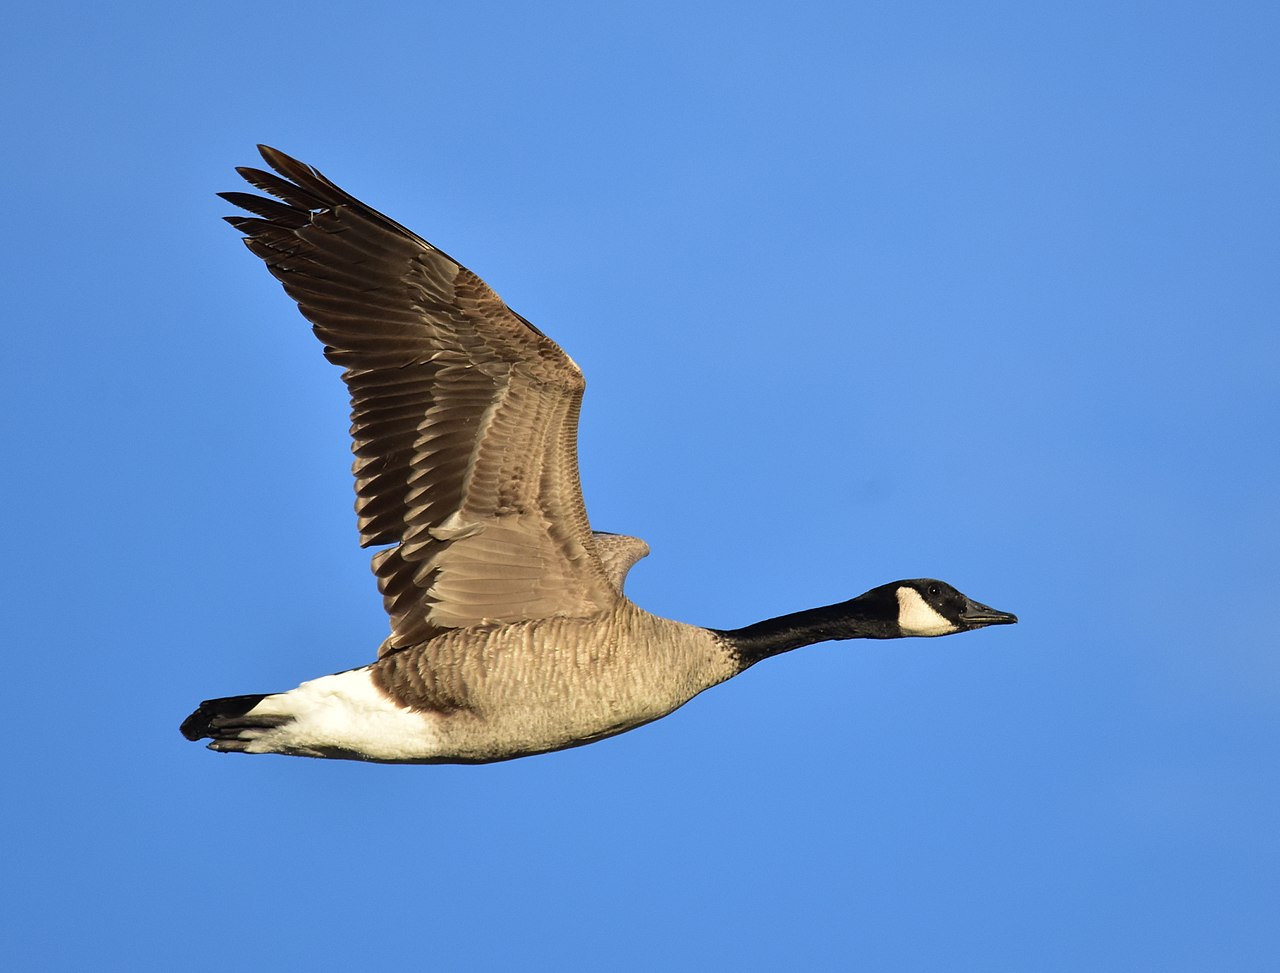 Canada goose on Seedskadee NWR (27826185489).jpg